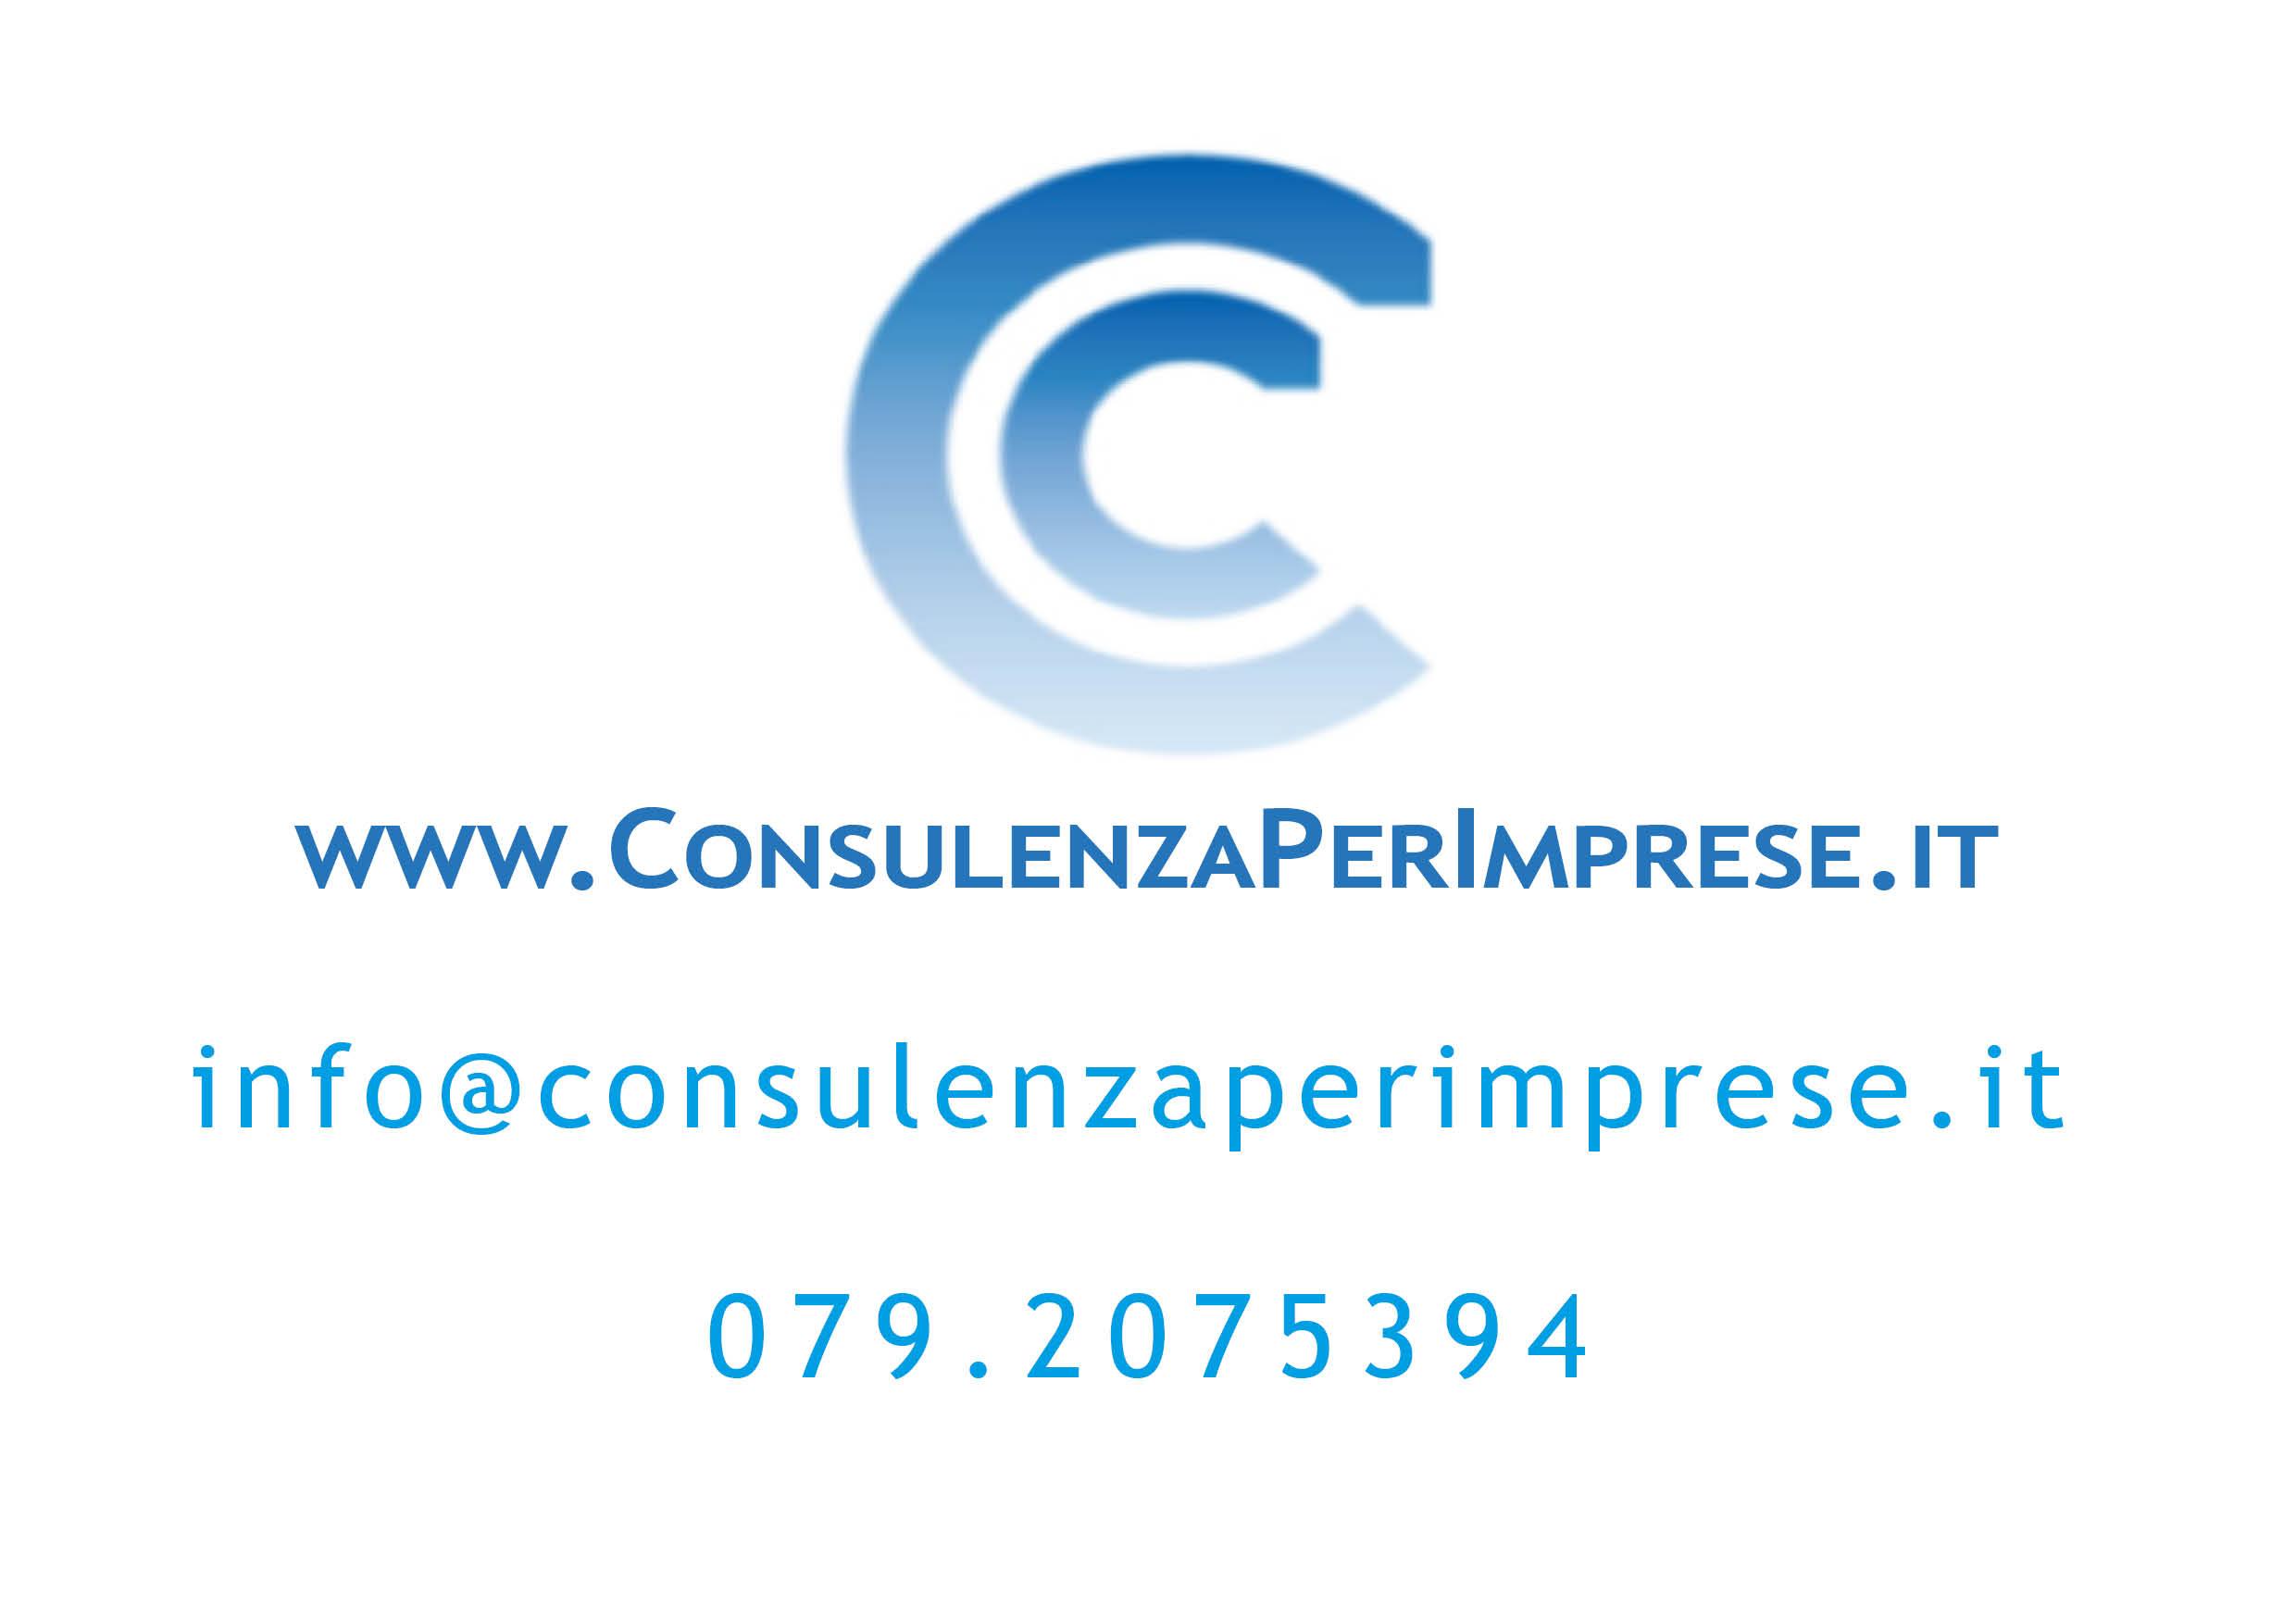 ConsulenzaPerImprese.it